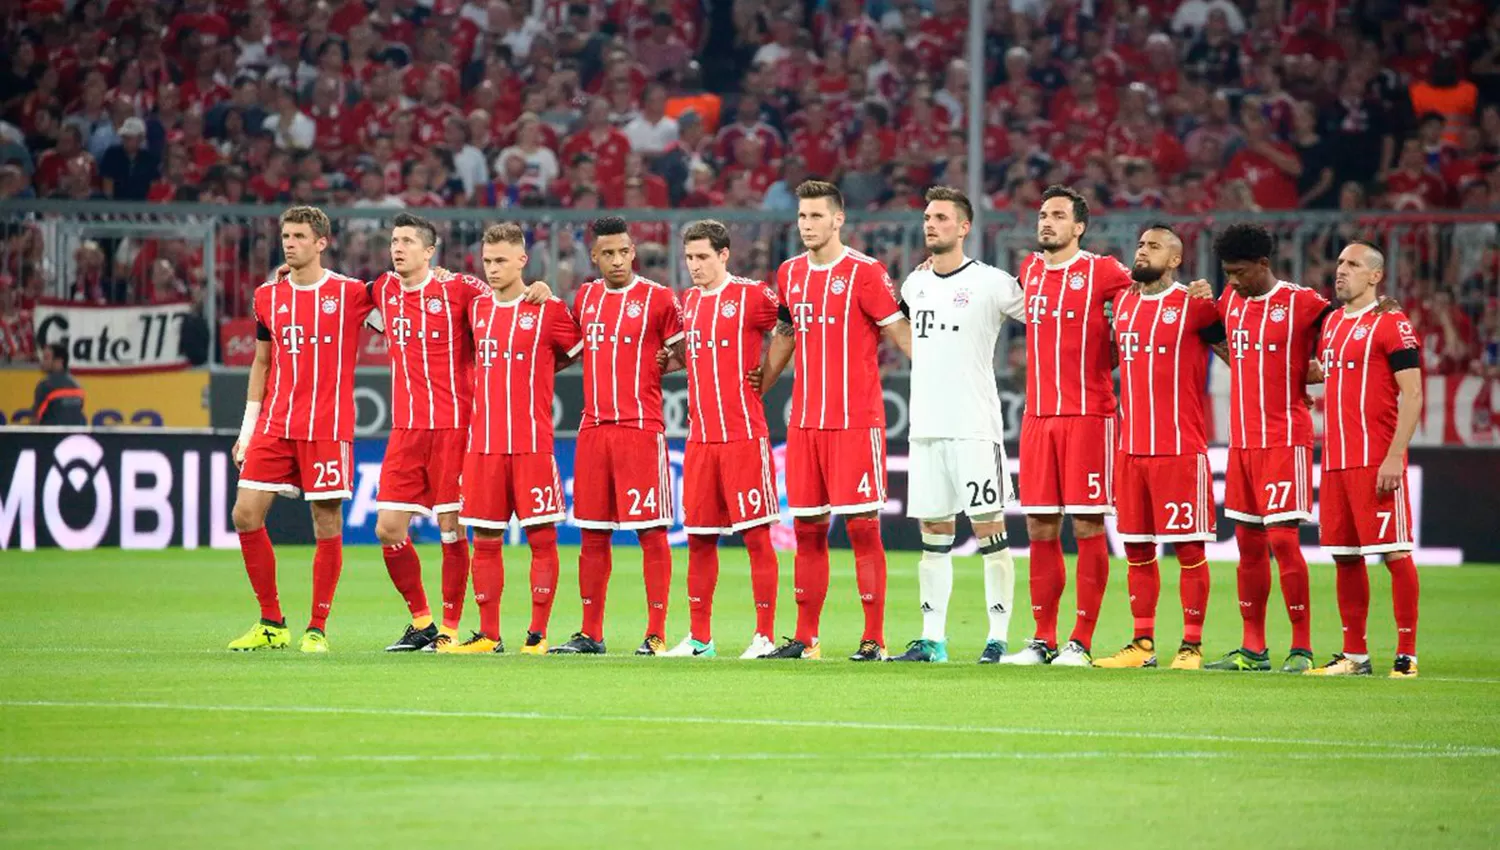 Los jugadores de Bayern Múnich en el minuto de silencio.
FOTO TOMADA DE TWITTER OFICIAL BUNDESLIGA